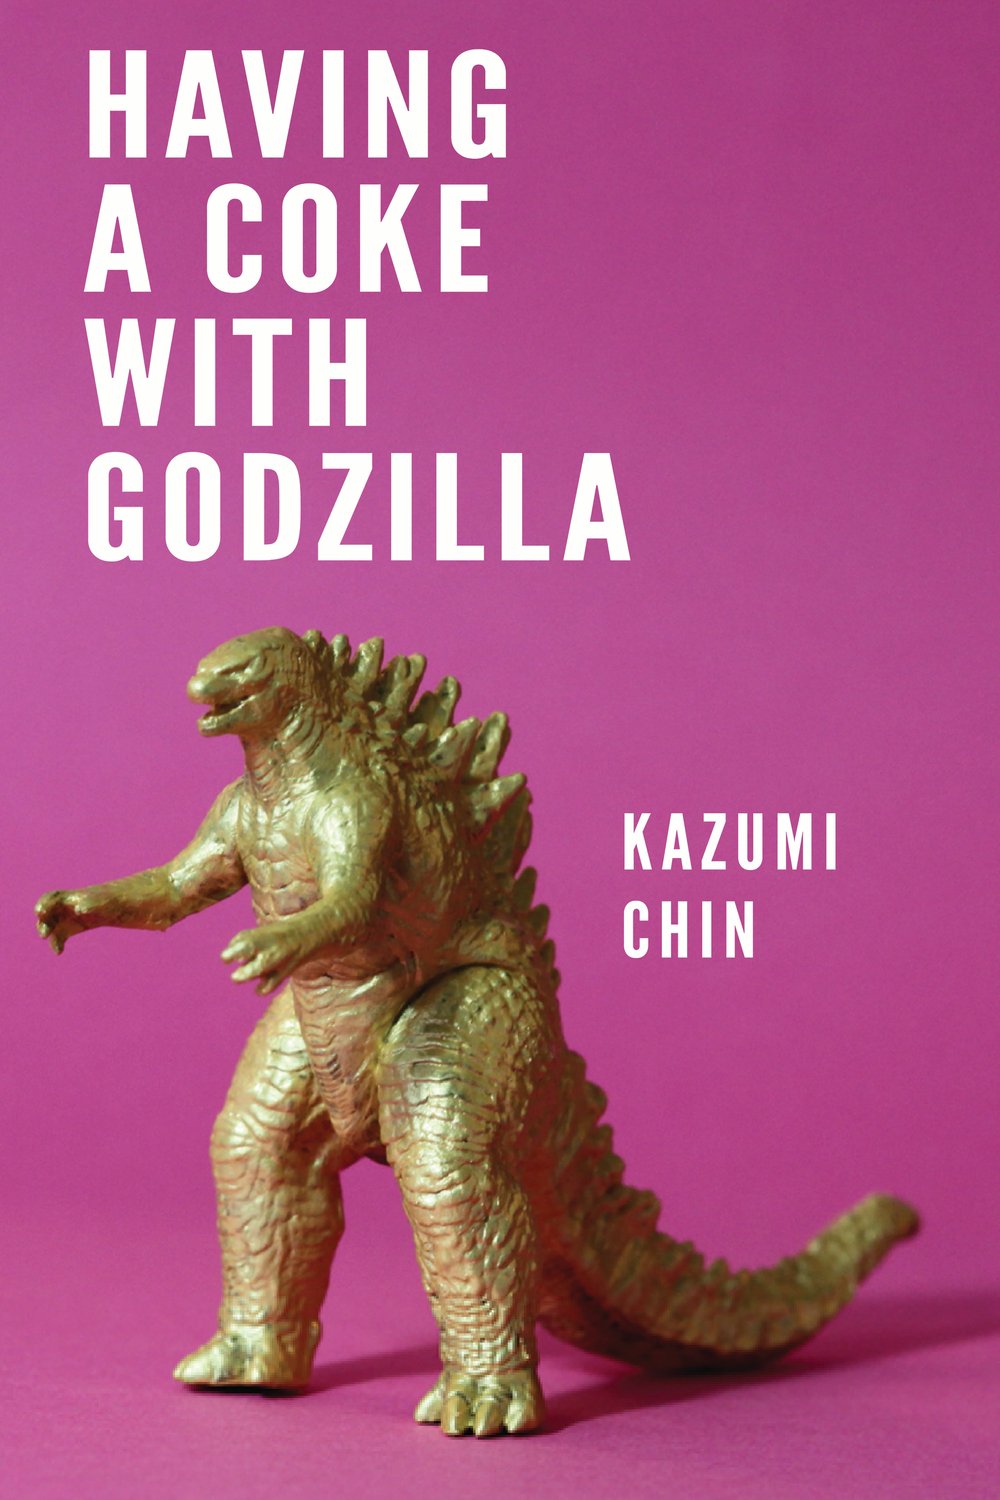 Having a Coke with Godzilla by Kazumi Chin